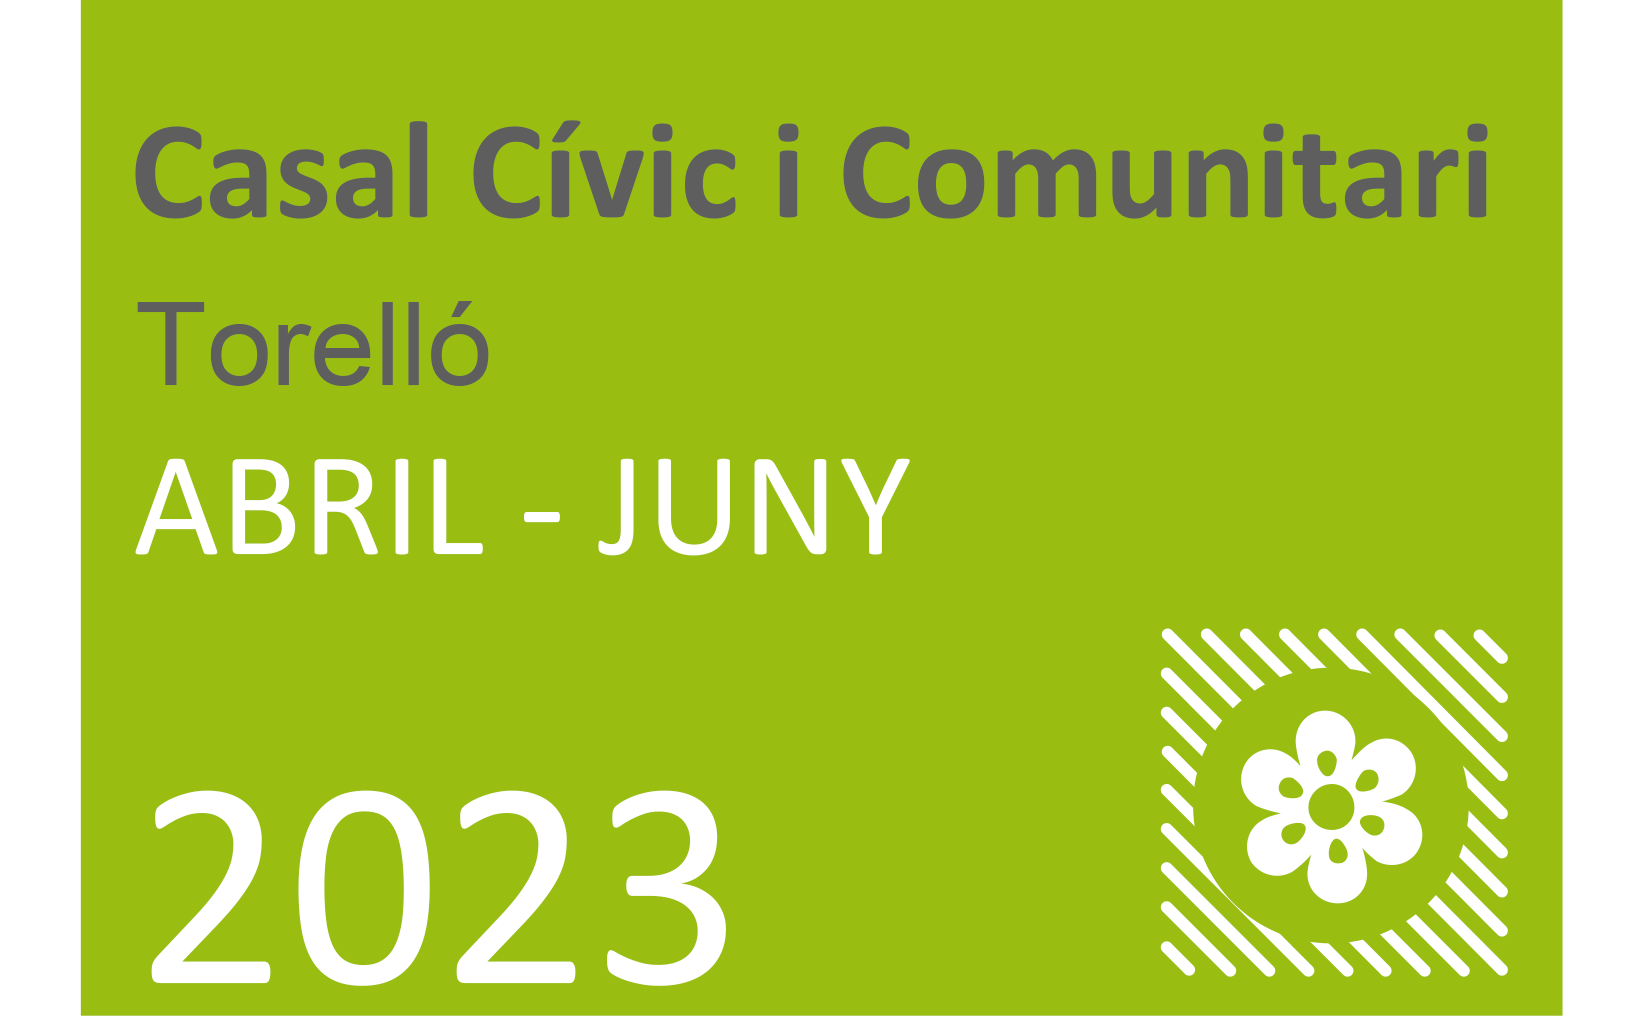 Activitats Primavera Casal Cívic i Comunitari de Torelló